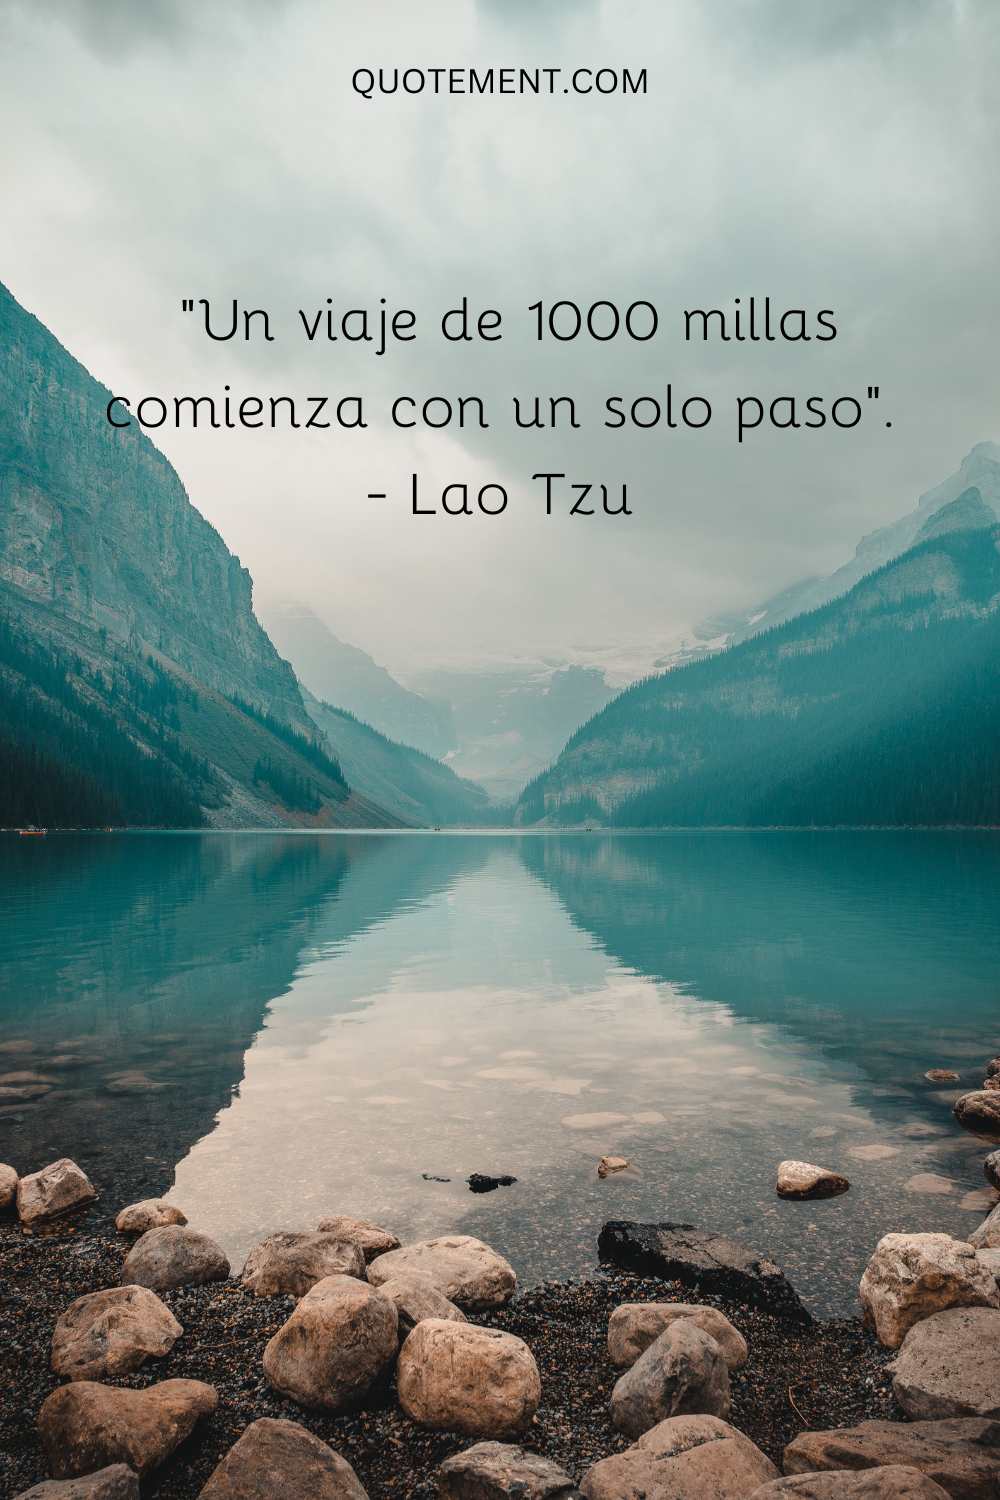 "Un viaje de 1.000 millas comienza con un solo paso". - Lao Tzu